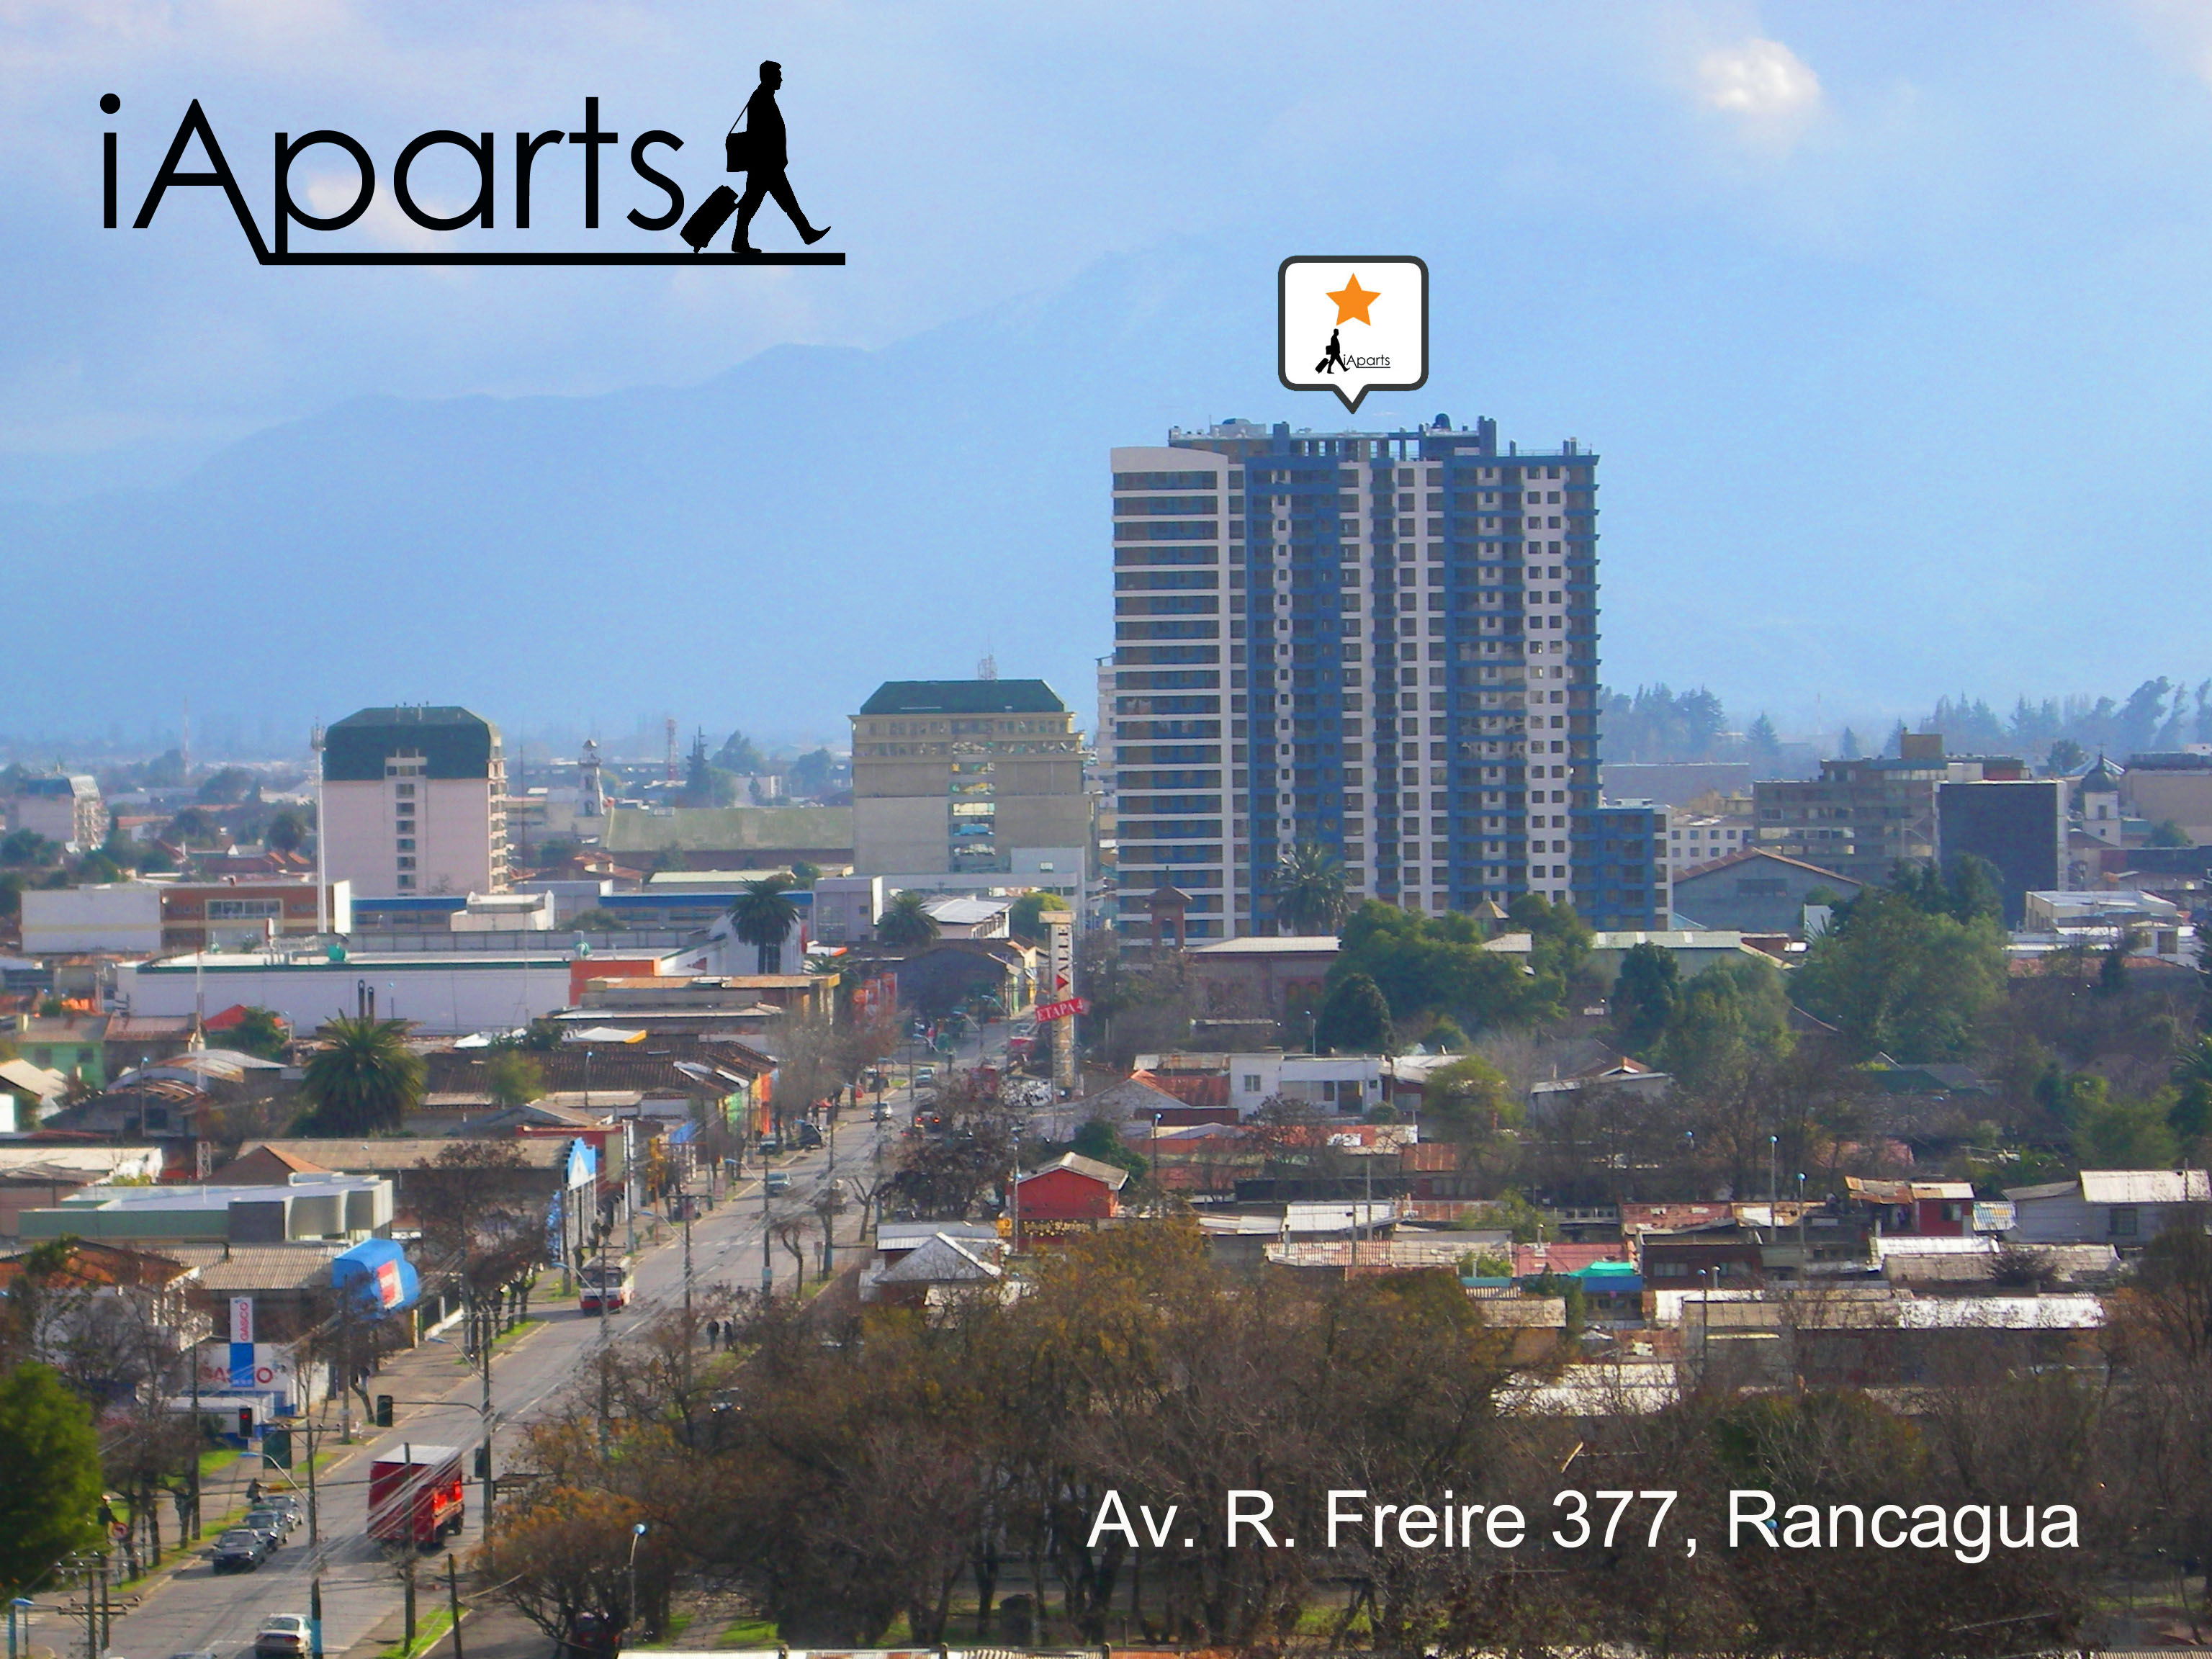 Centro de la ciudad de Rancagua. Edificio Panoramic rodeado de otros edificios del centro y logo de iAparts a la derecha.

